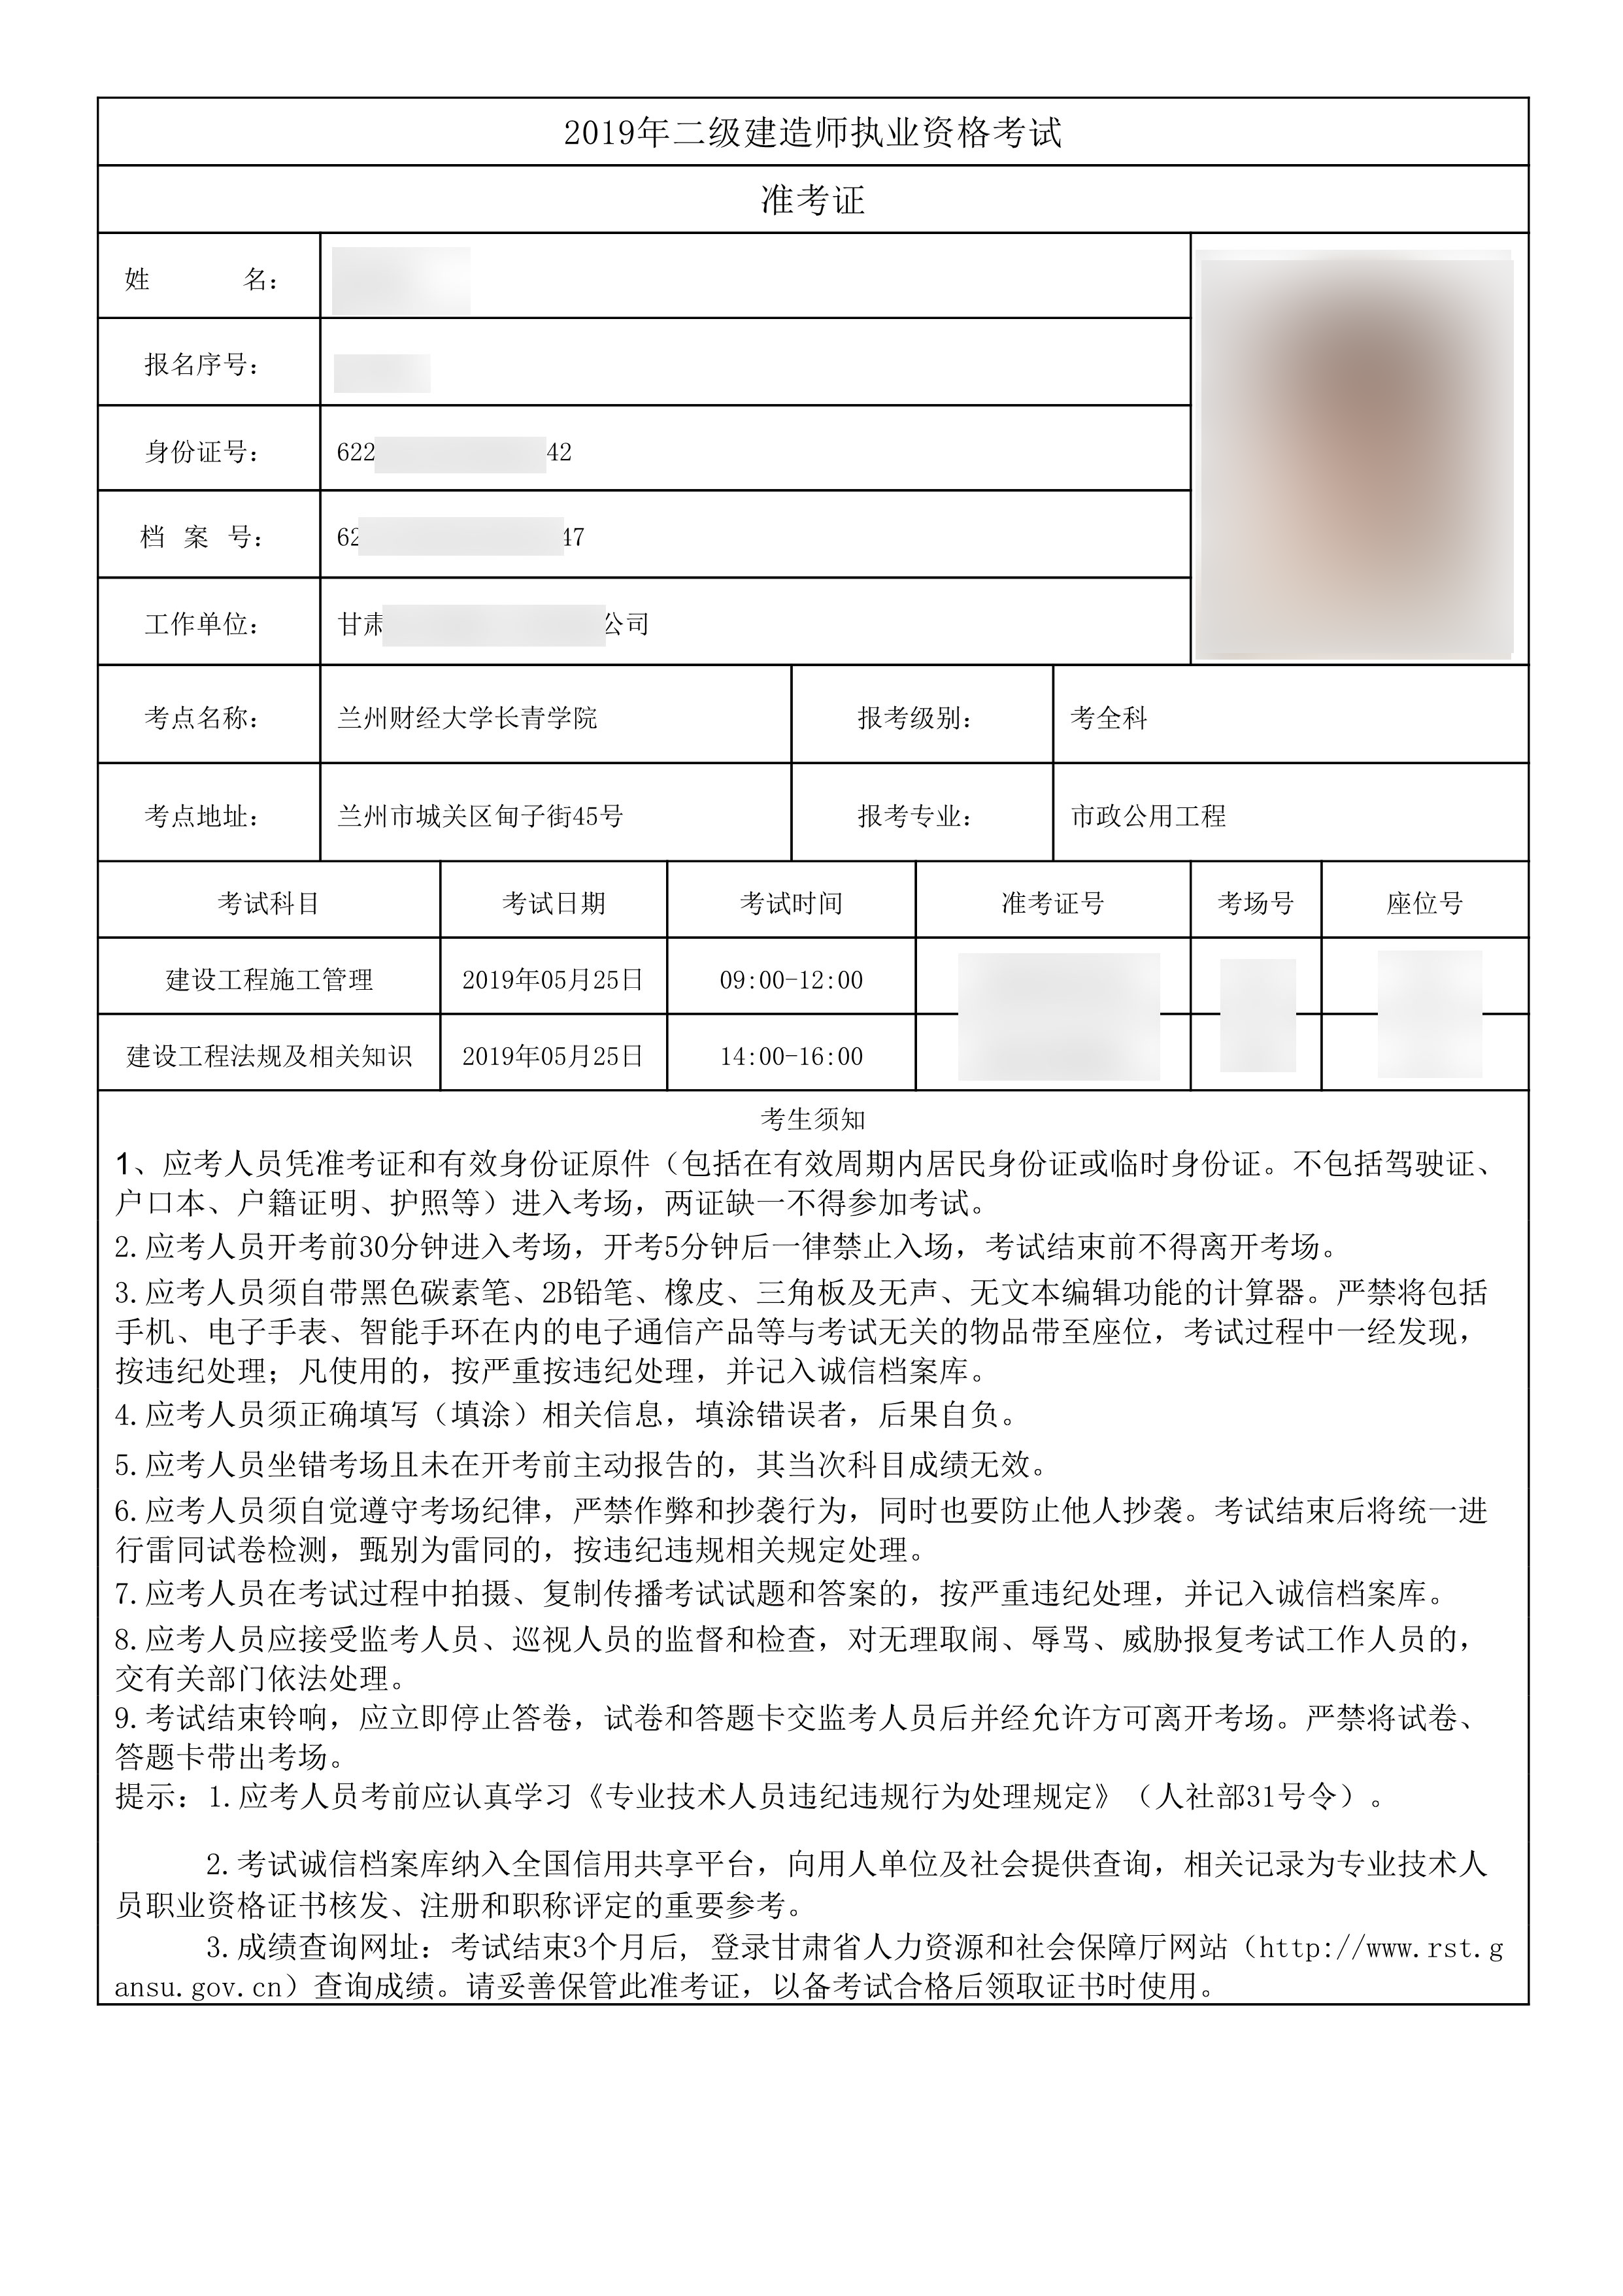 【通知】甘肃省二建准考证打印工作开始